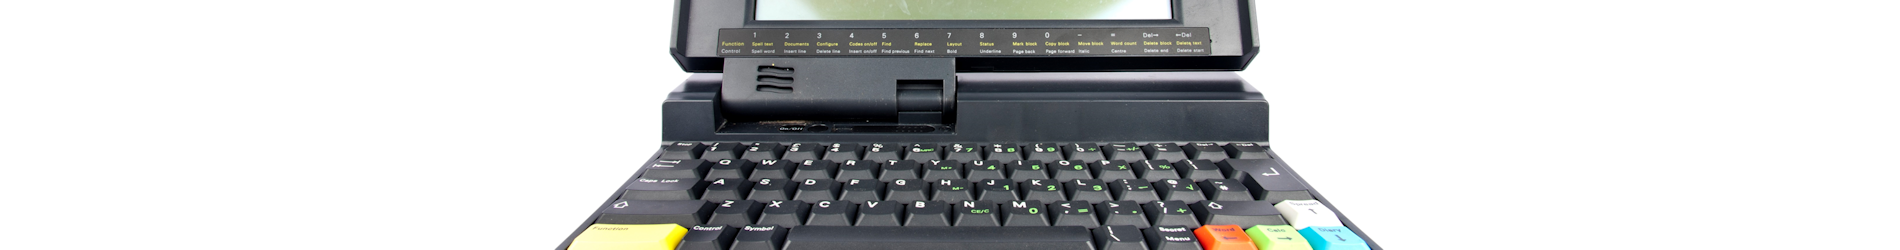 Amstrad Notepad Computer NC200 (1993)